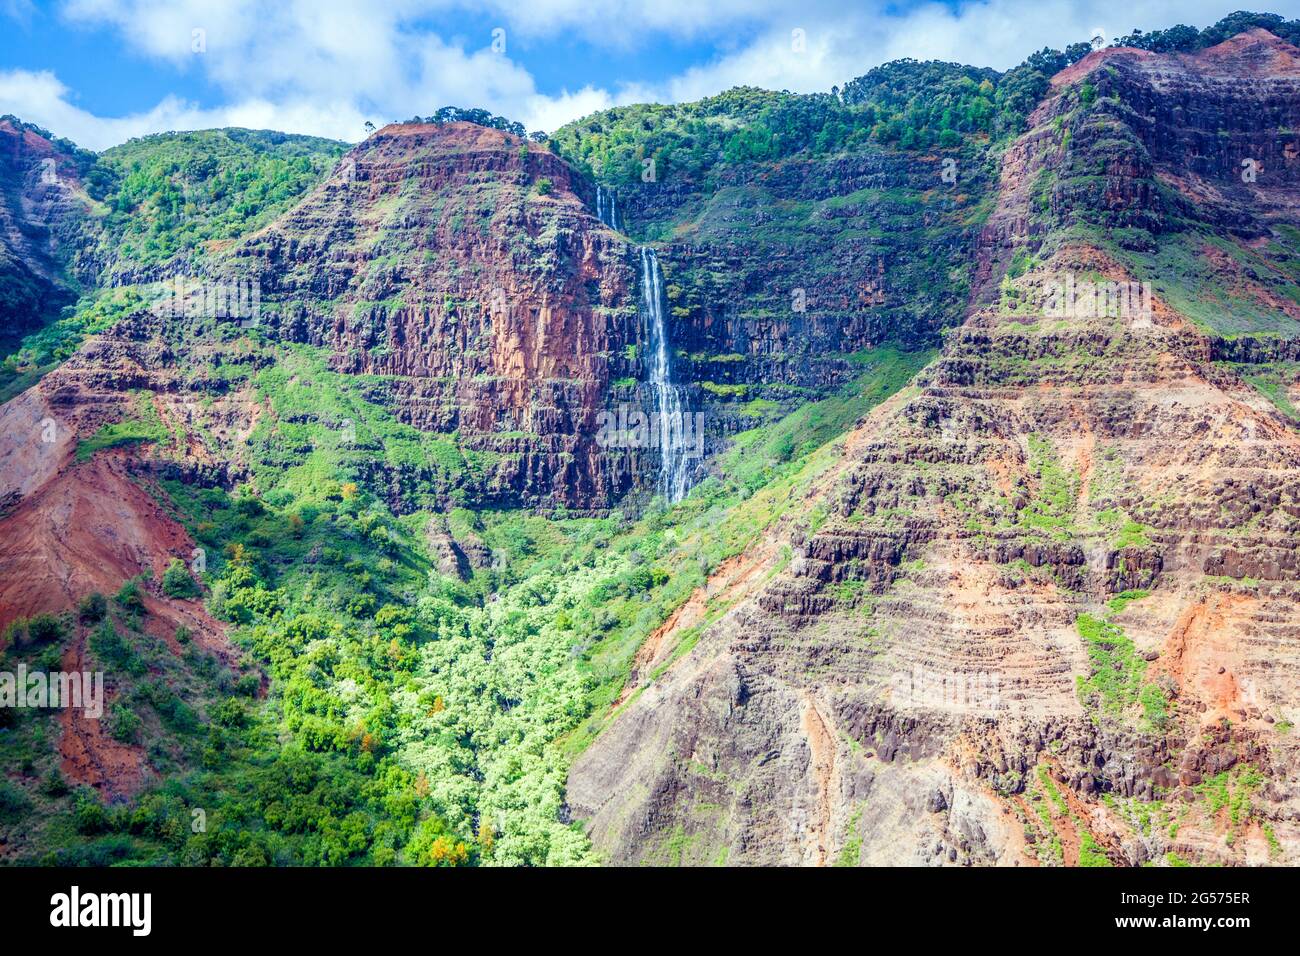 A waterfall flows down Kauai's Waimea Canyon near the Napali Coast; Kauai, Hawaii Stock Photo